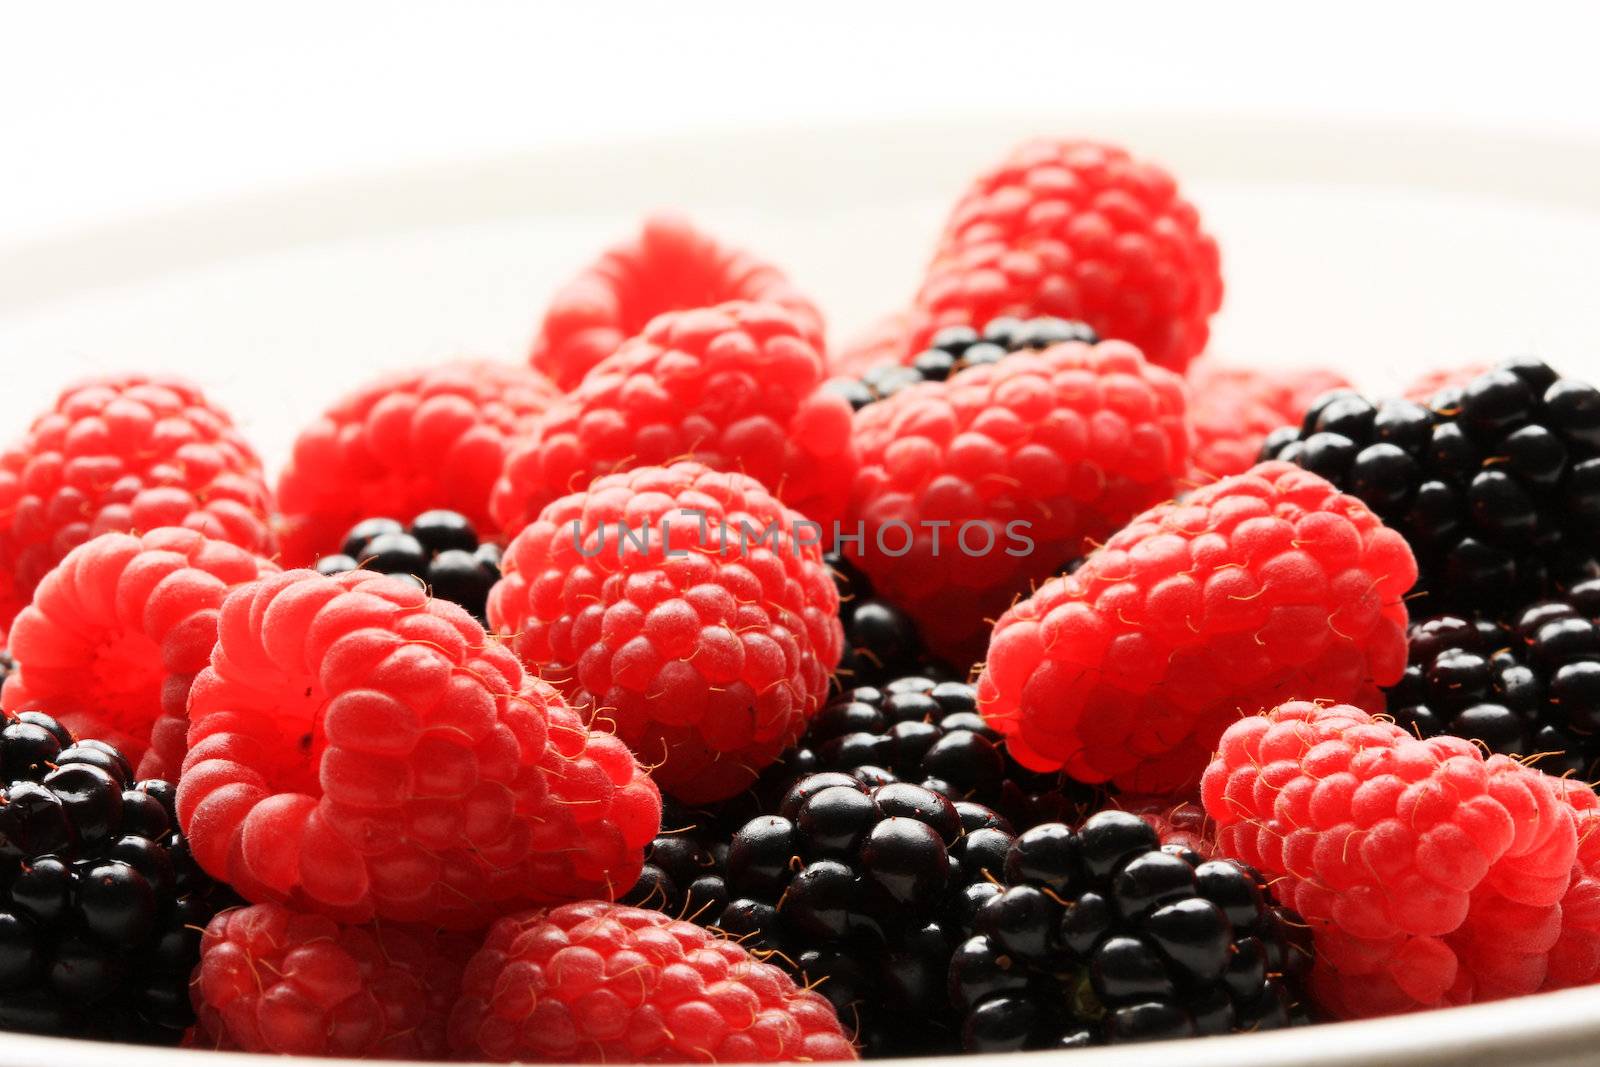 A bowl of raspberries and blackberries, shot in studio